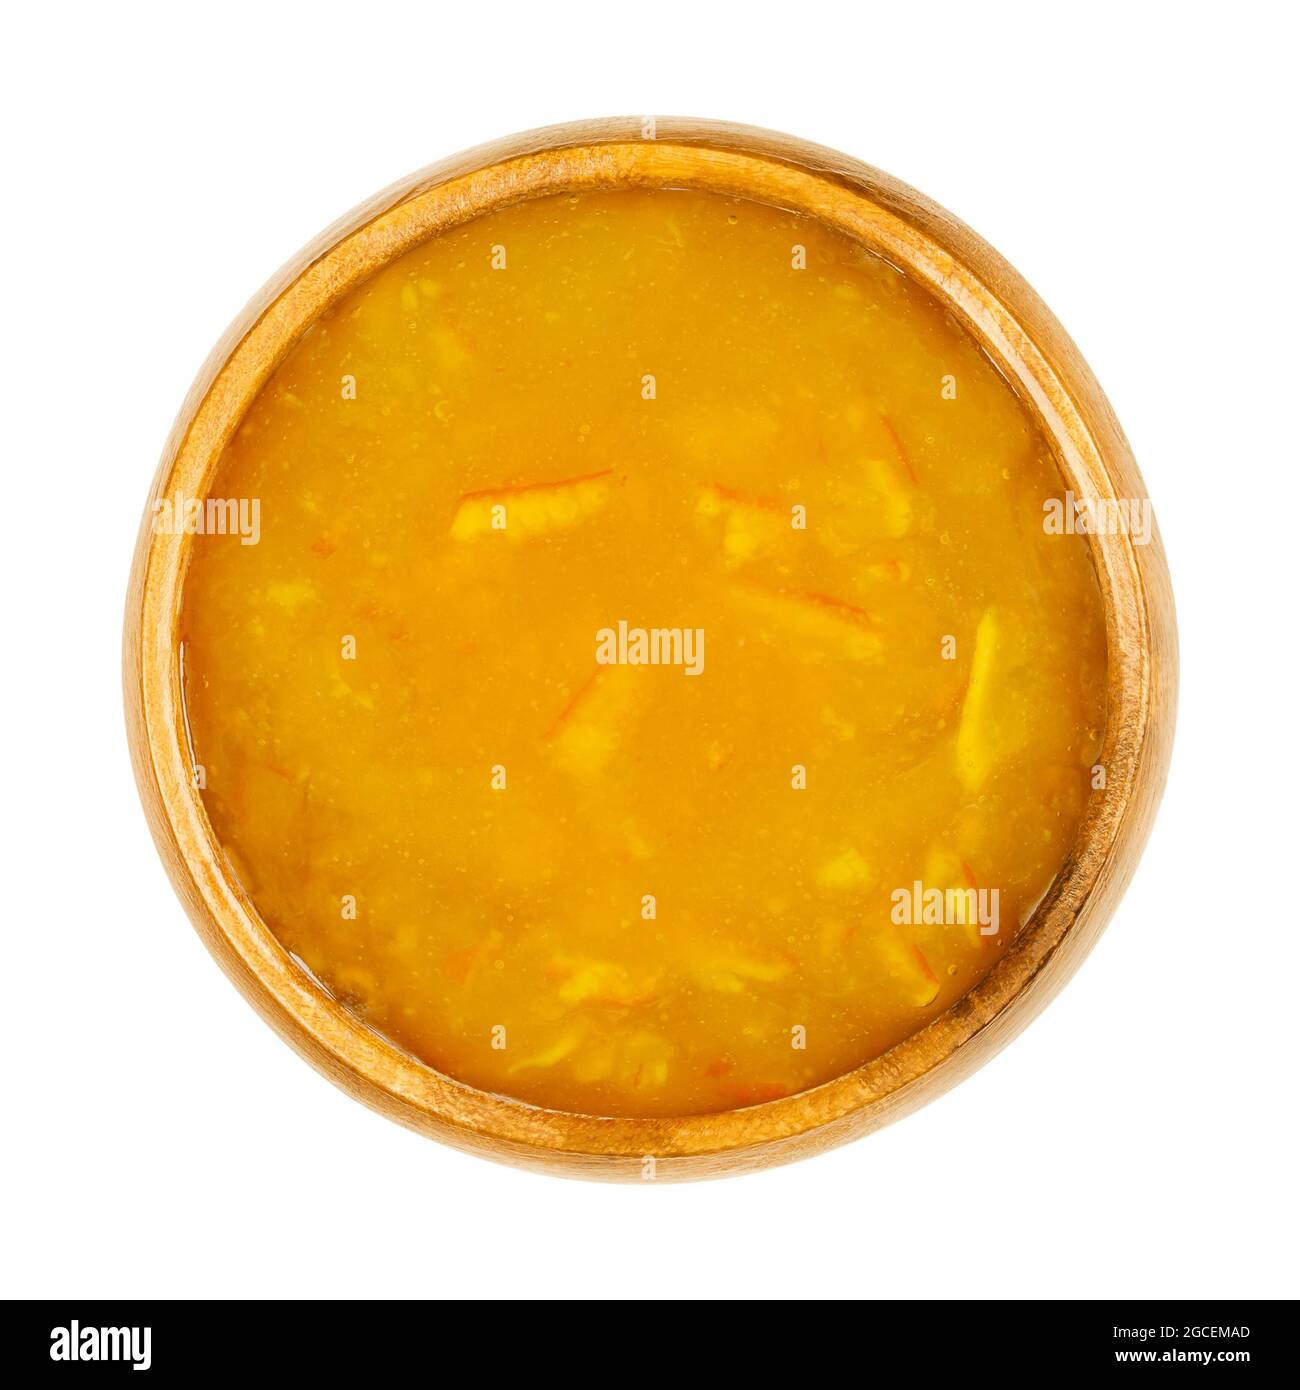 Marmellata d'arancia, in una ciotola di legno. Marmellata d'arancia, pane dolce e leggermente amaro, fatto di arance cotte, zucchero e pectina. Foto Stock